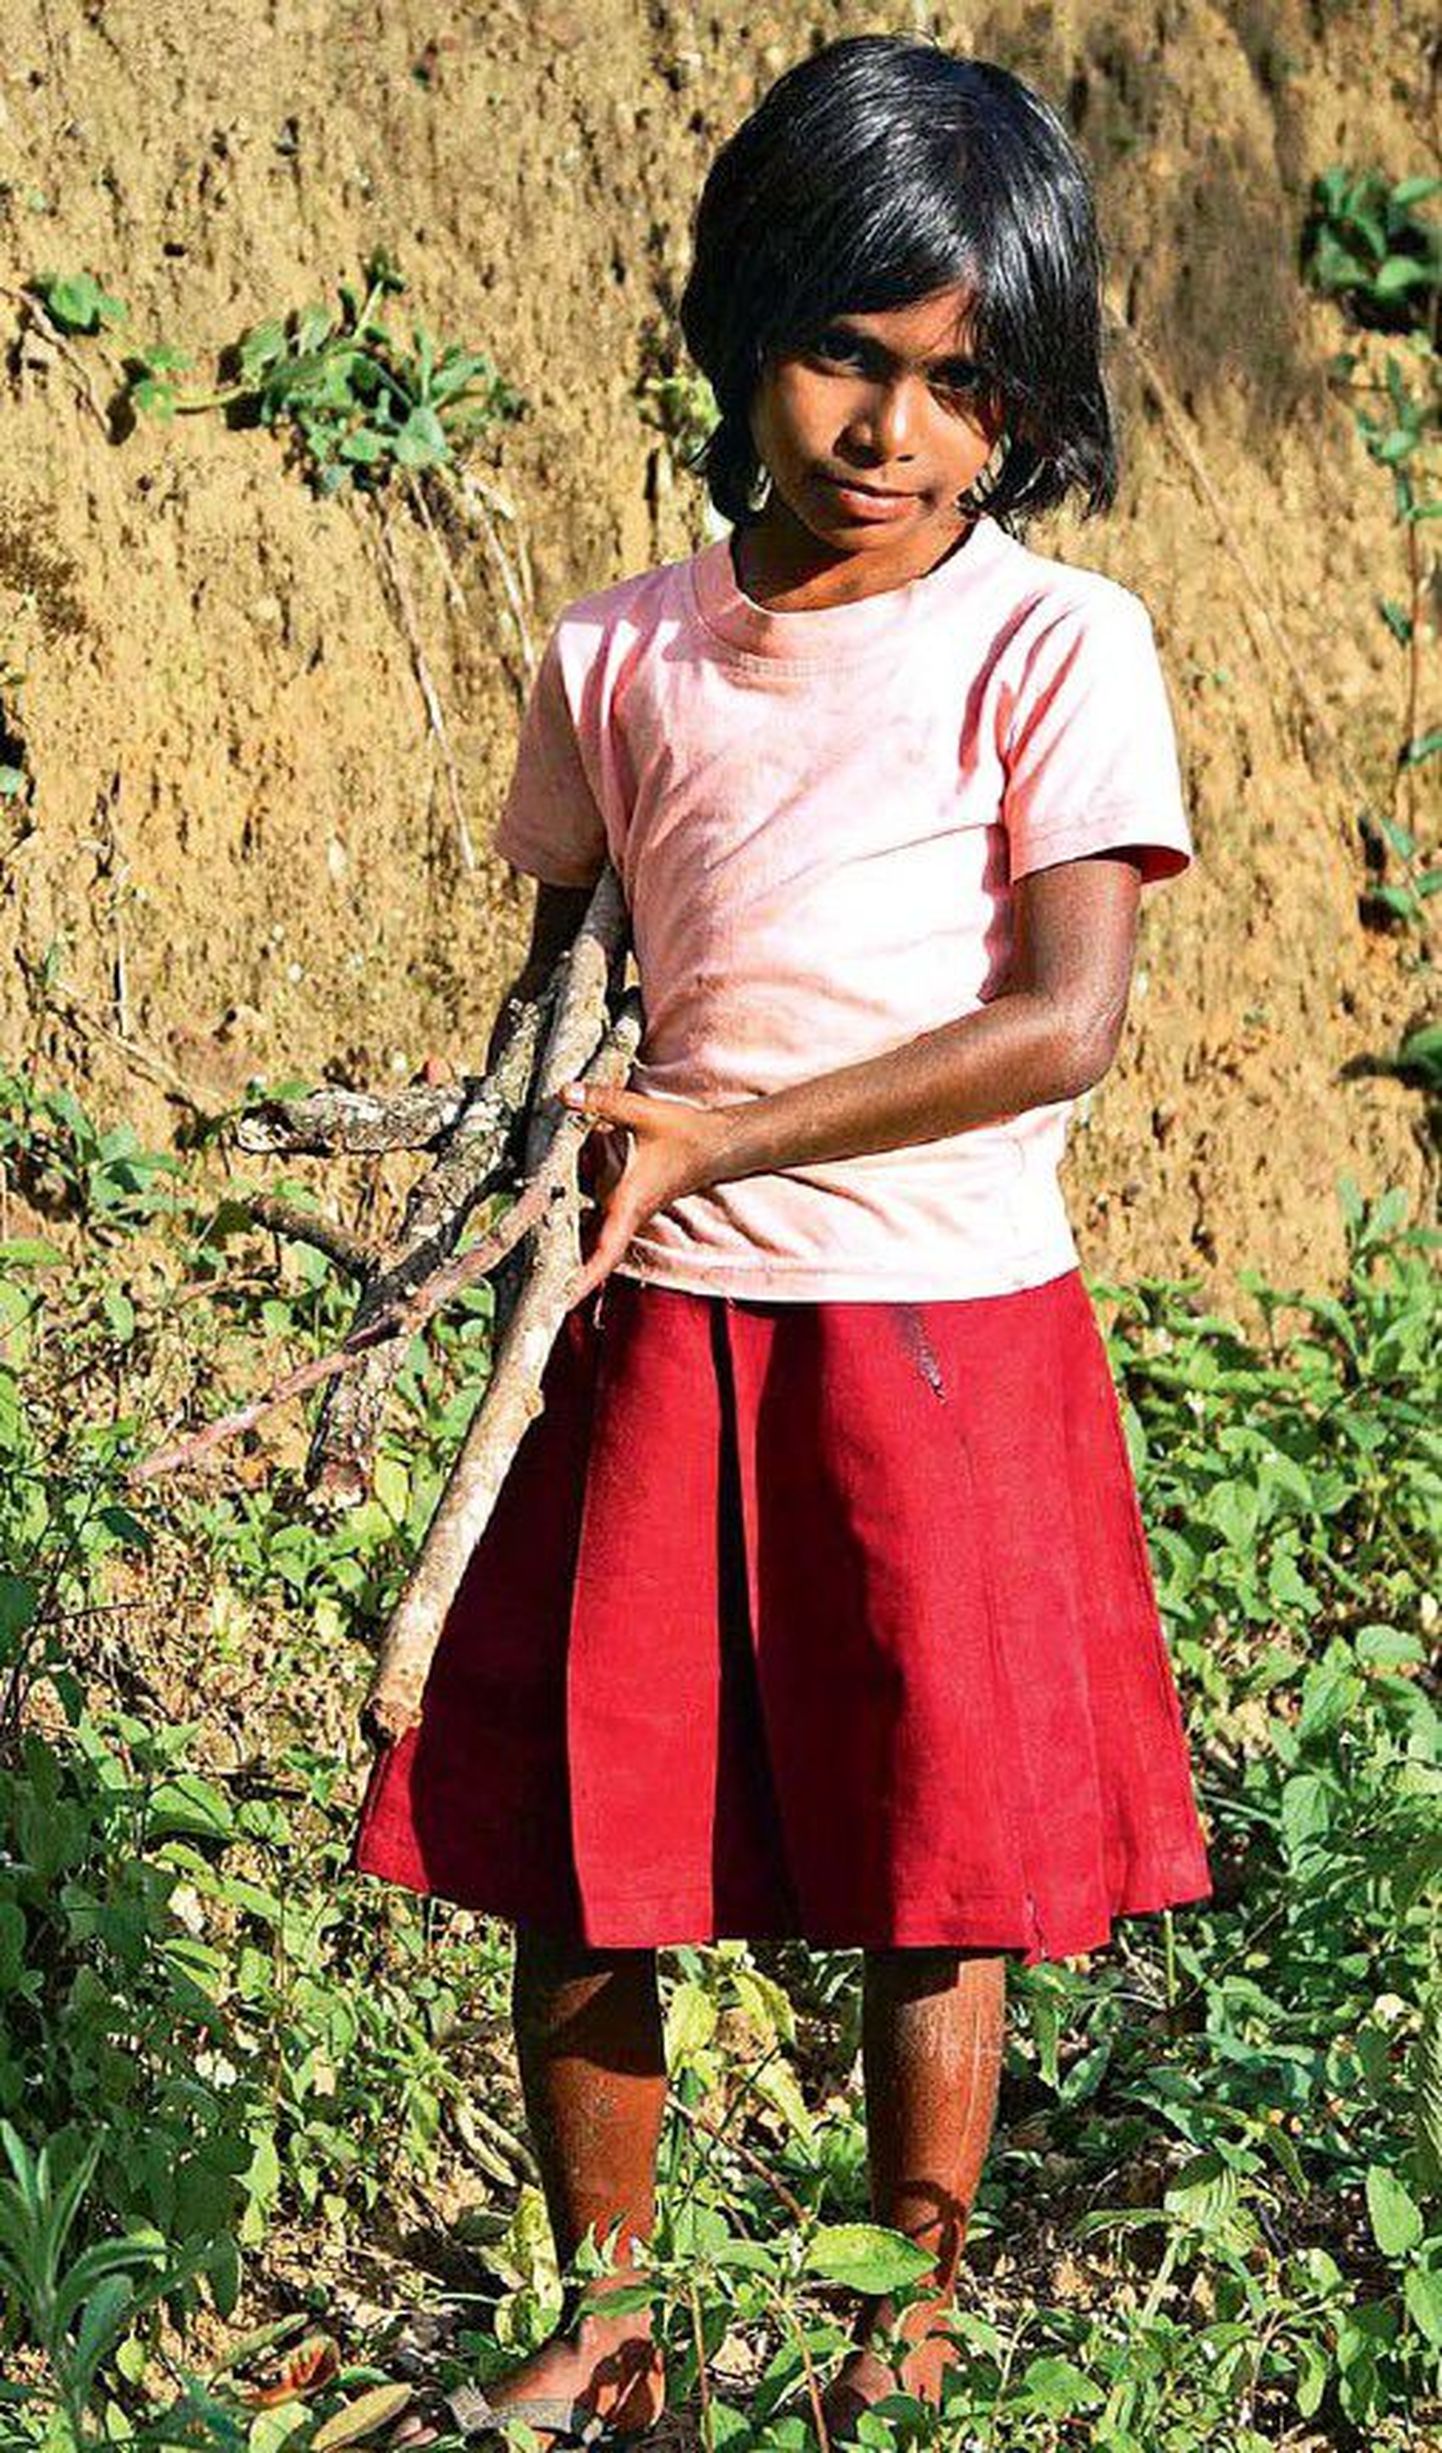 Kõige raskema töö teeistandustes teevad ära tamili naised, kes kuuluvad saare kõige vaesema elanikkonna hulka. Laste ülesandeks on toiduvalmistamiseks hagu korjata.